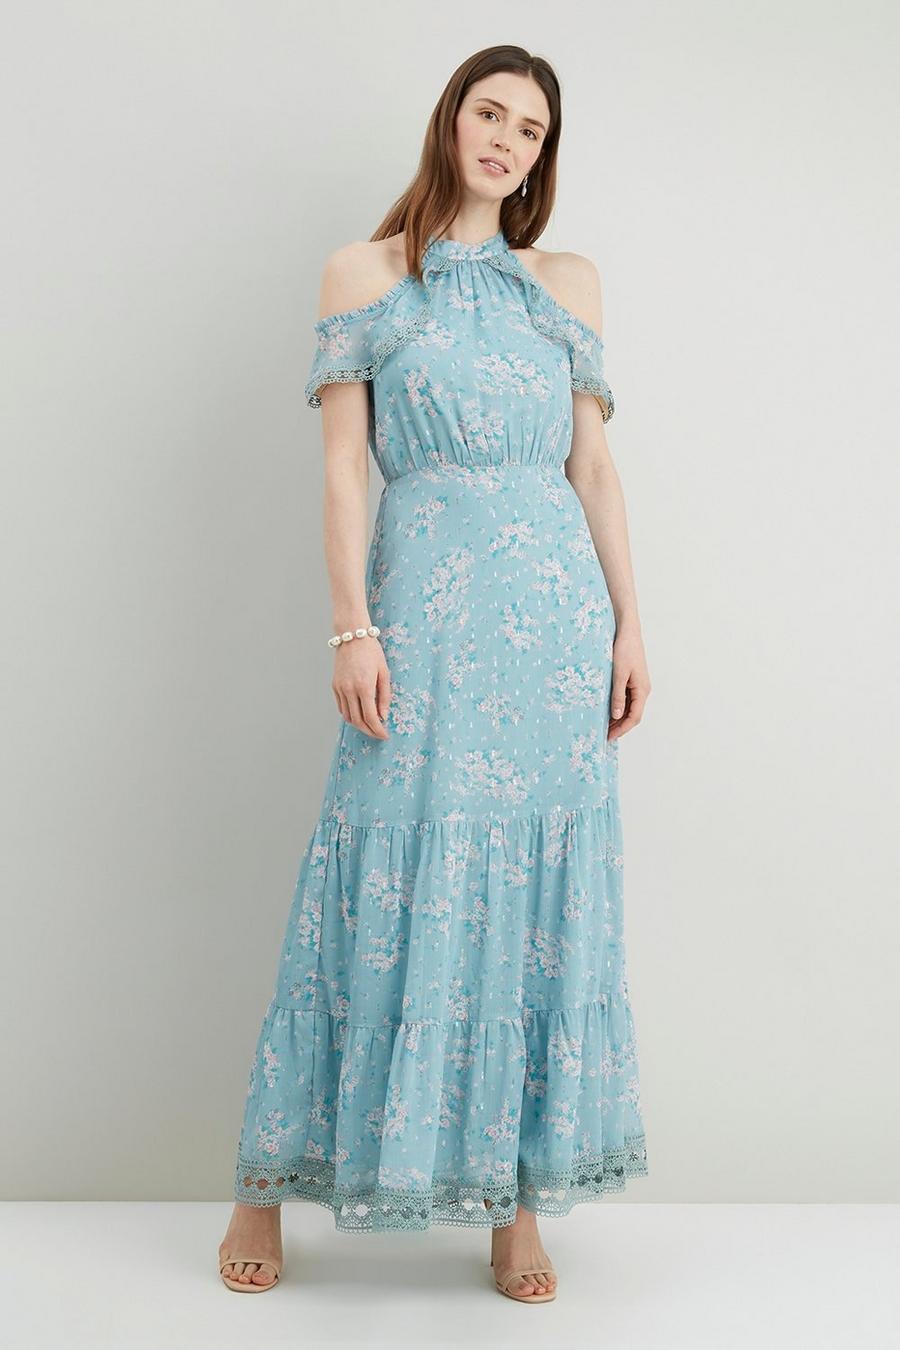 Mint Floral Lace Trim Ruffle Dress